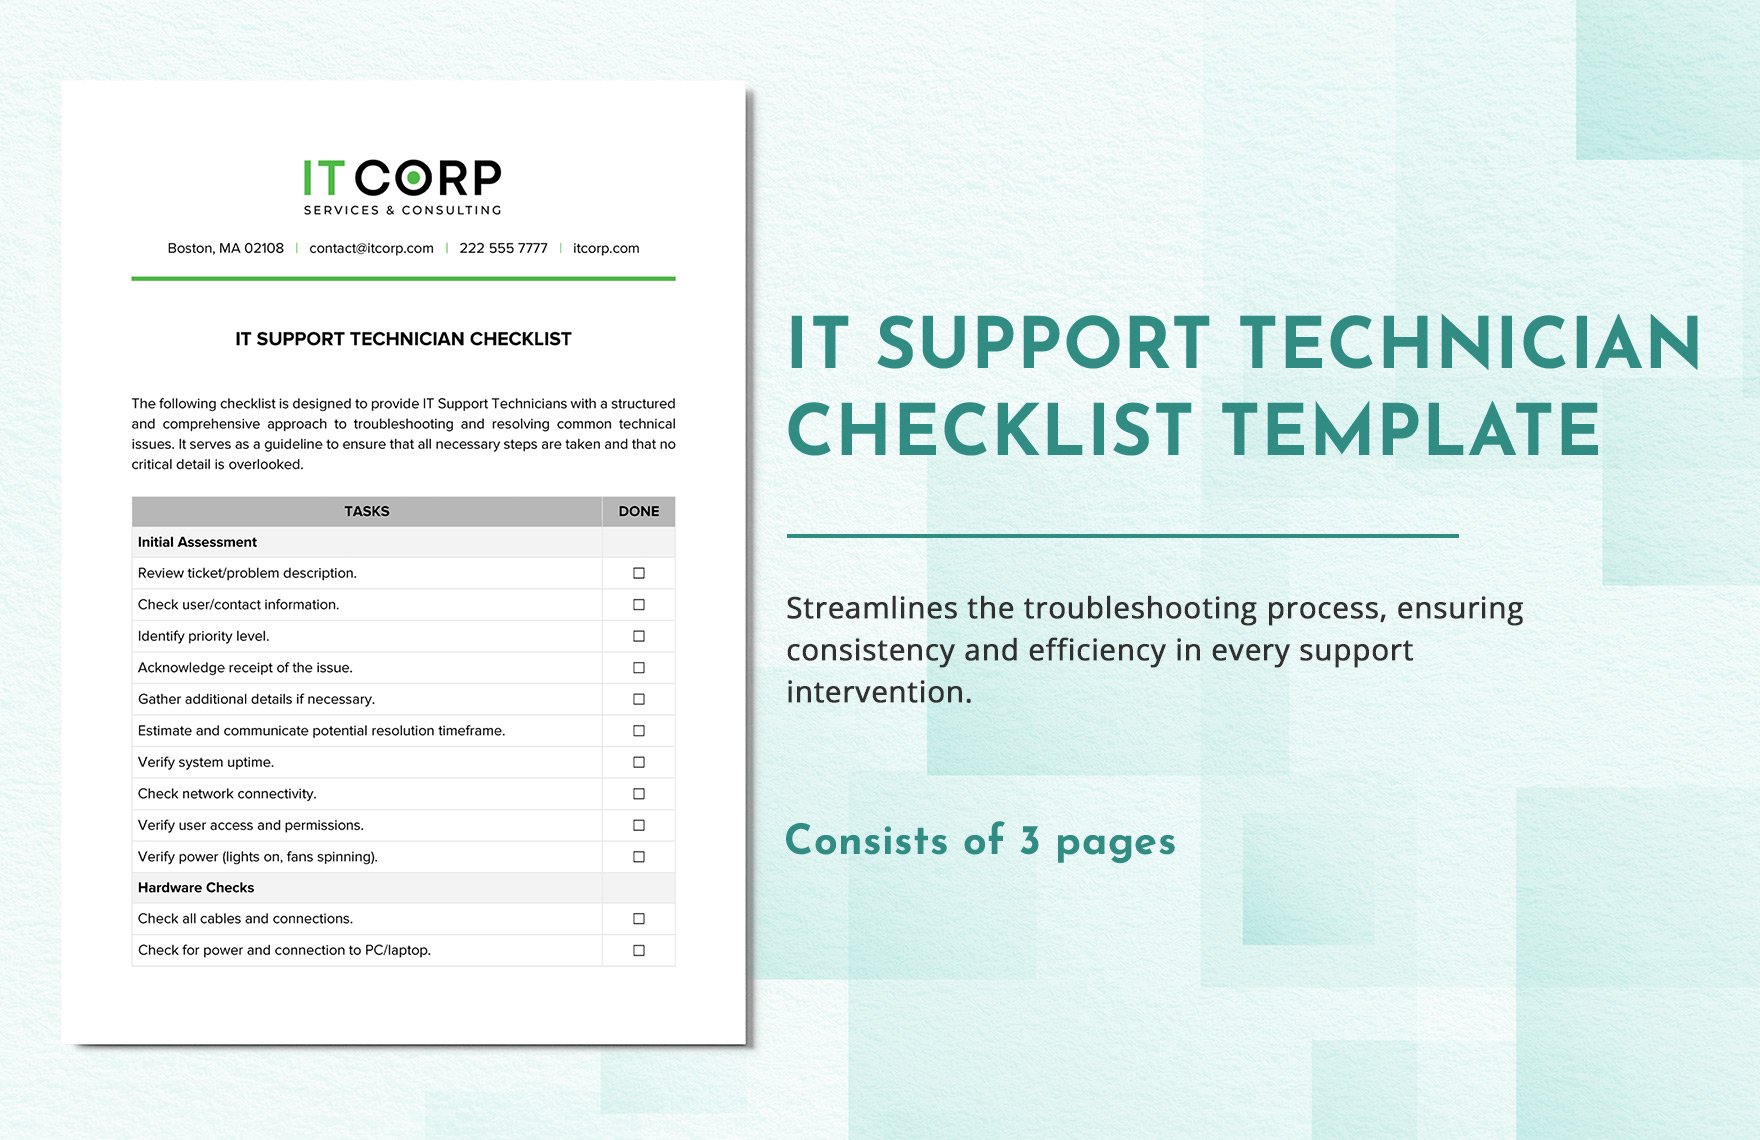 IT Support Technician Checklist Template